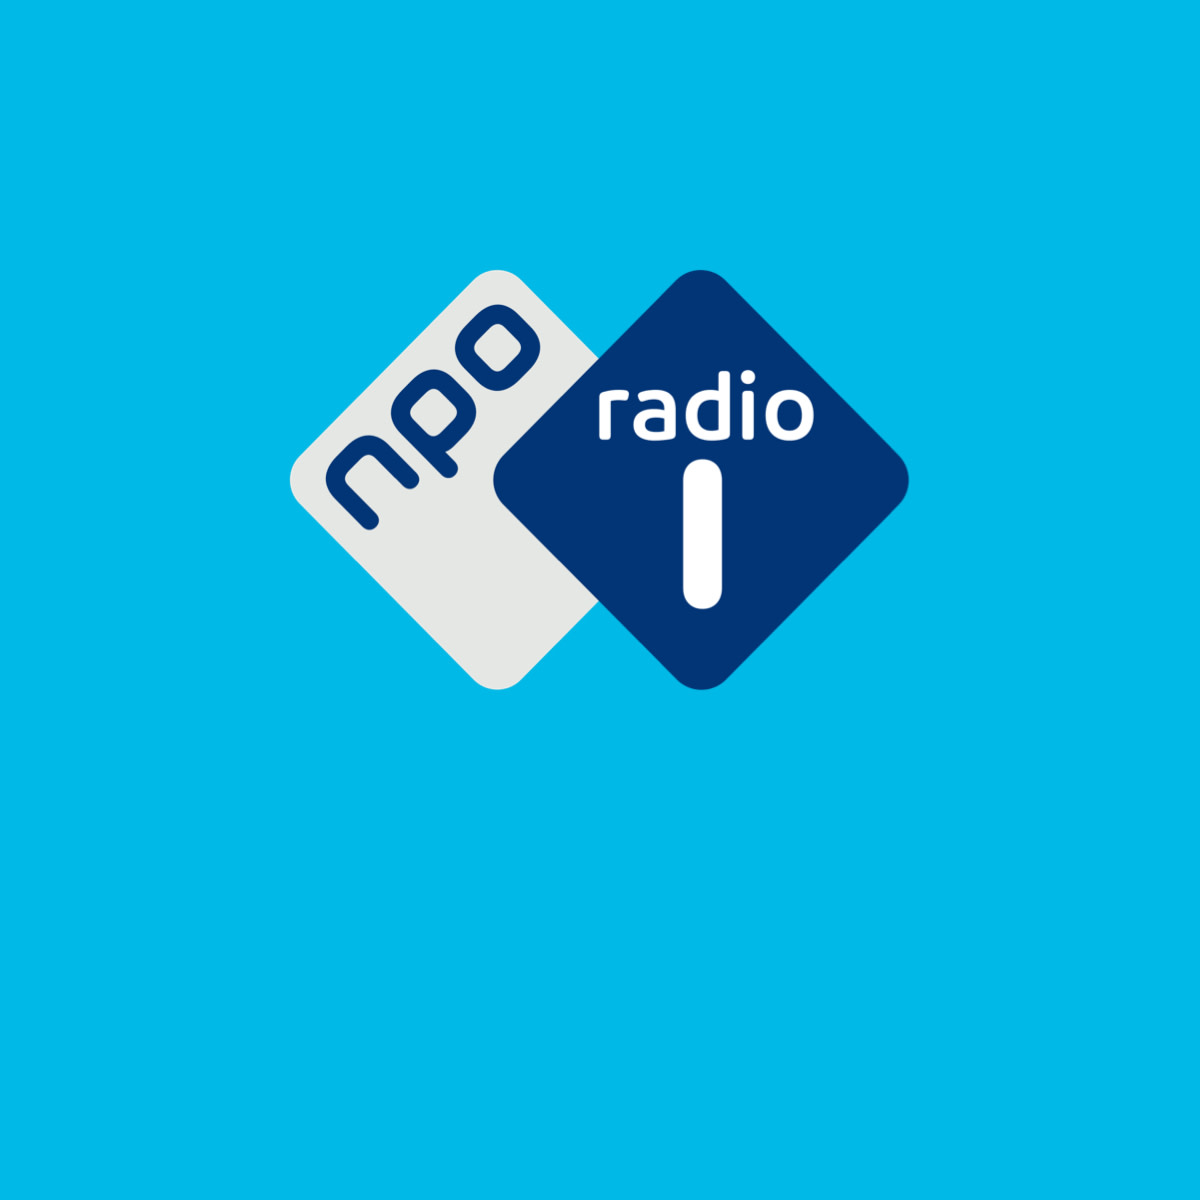 sigaar Comorama Atlantische Oceaan NPO Radio 1 luisteren | Volg alles van NPO online | JUKE.nl